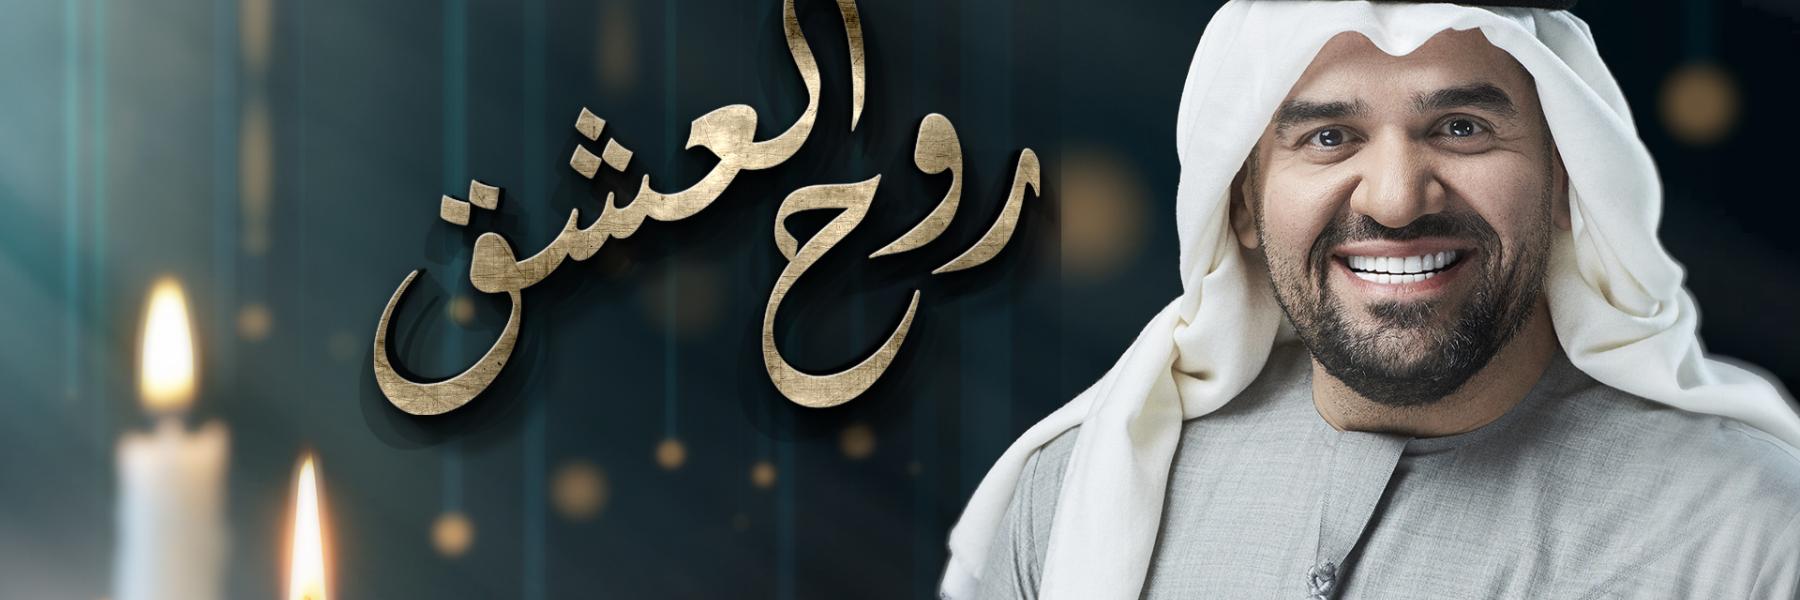 حسين الجسمي يبُث مشاعر المحبة في "روح العشق" من ألحانه